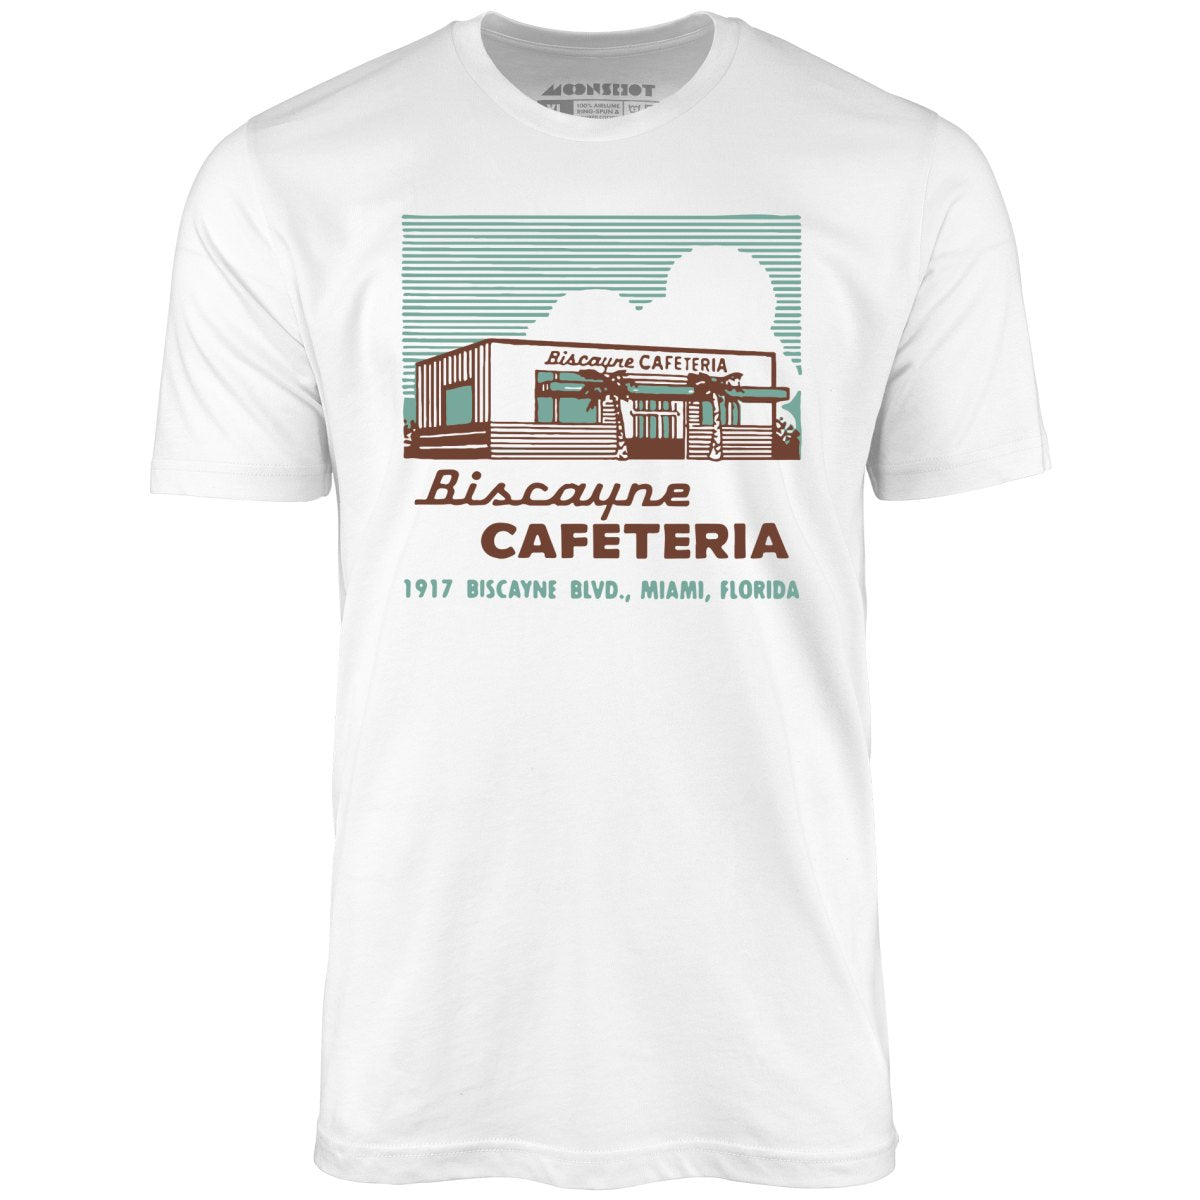 Biscayne Cafeteria - Miami, FL - Vintage Restaurant - Unisex T-Shirt